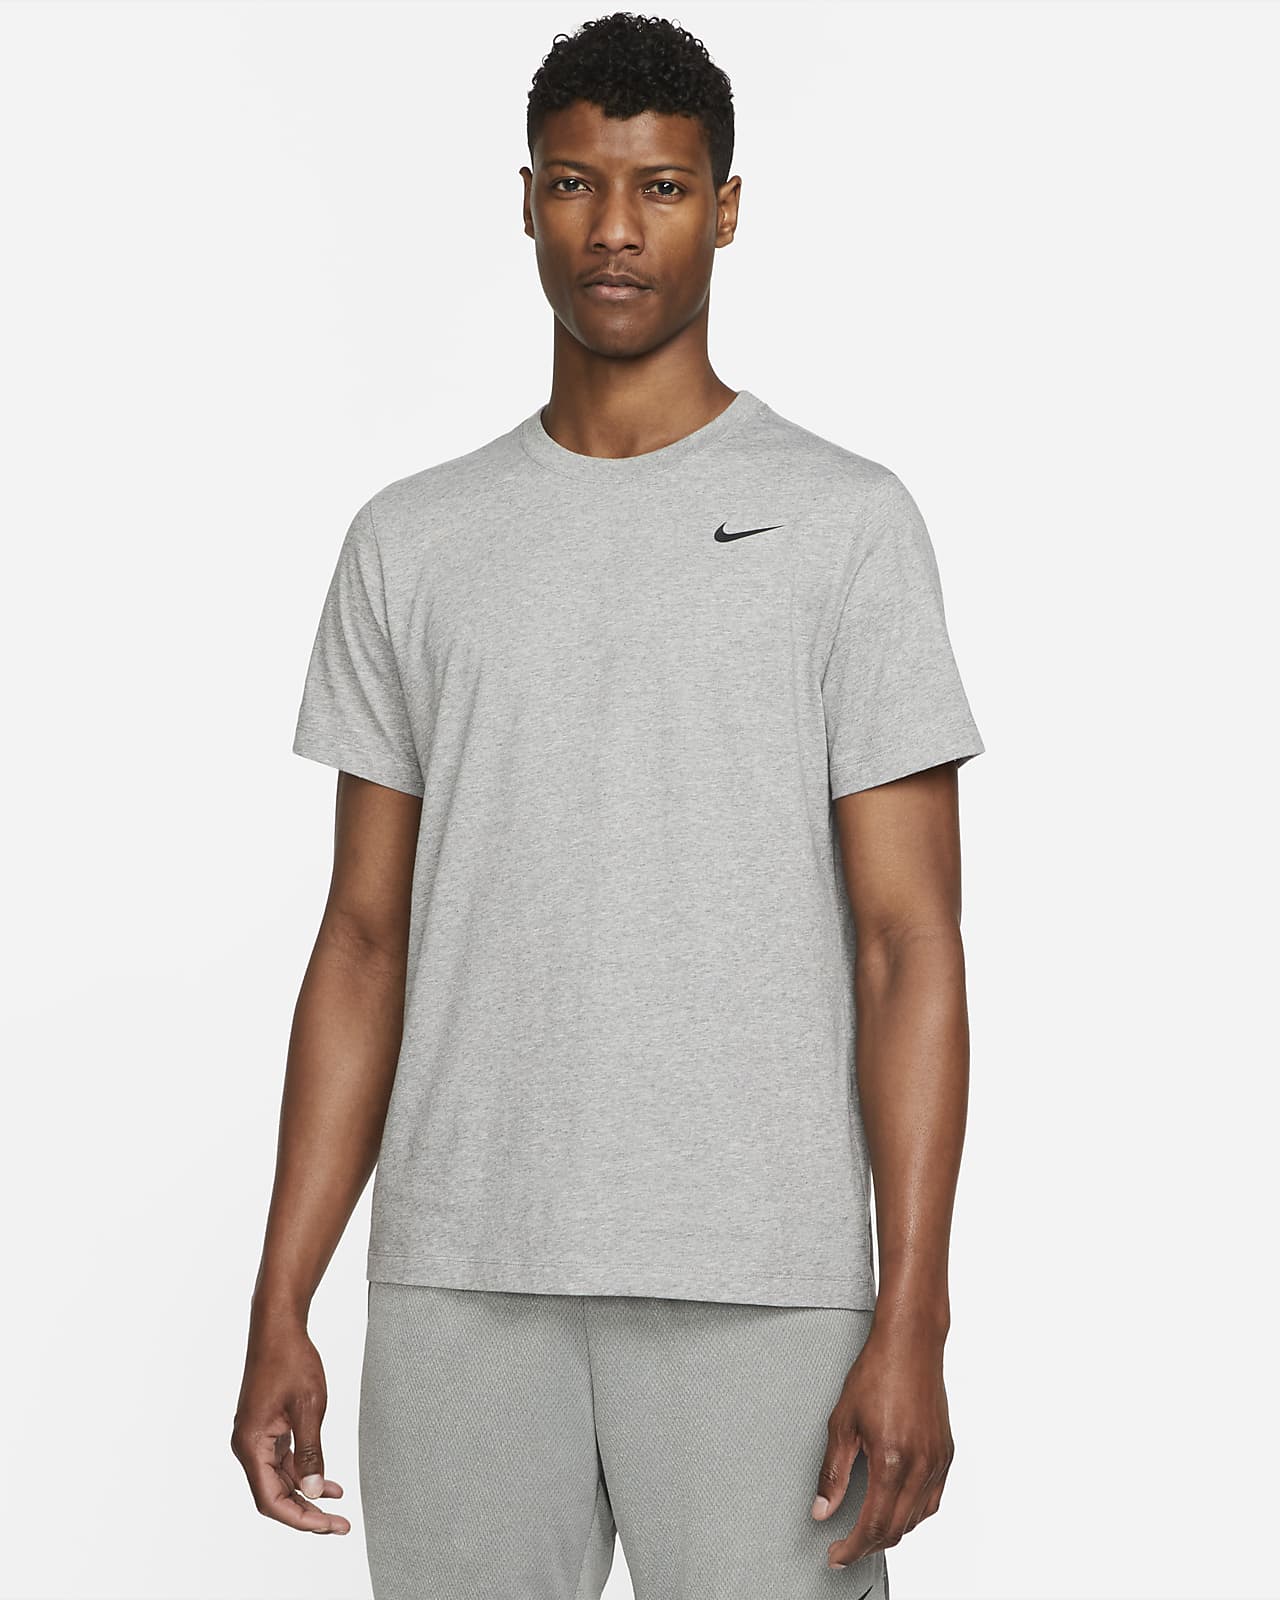 uitgebreid Beginner Circulaire Nike Dri-FIT Men's Fitness T-Shirt. Nike LU